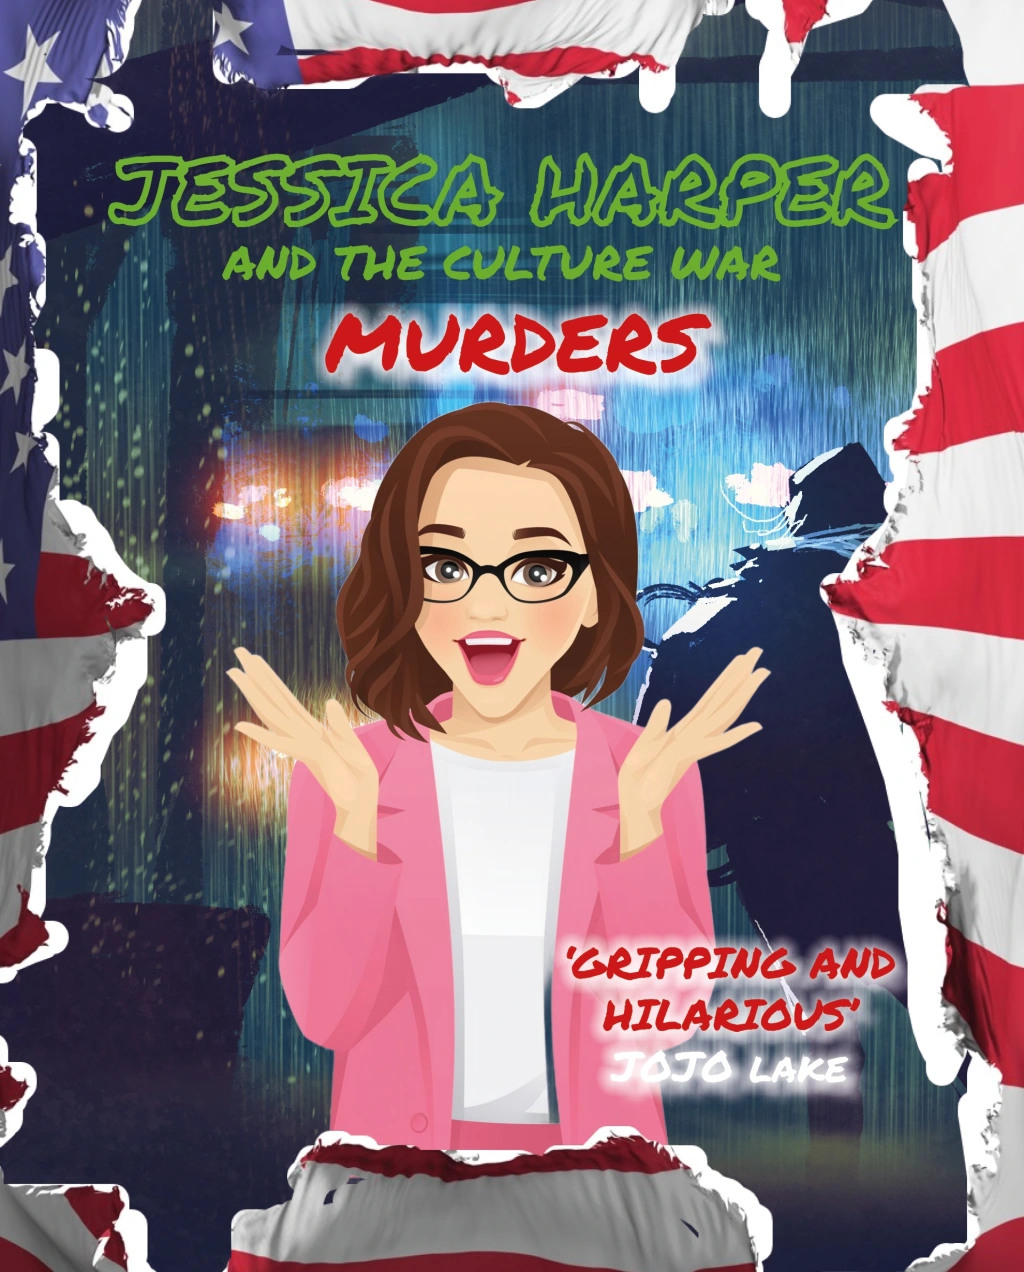 Jessica Harper and the Culture War Murders